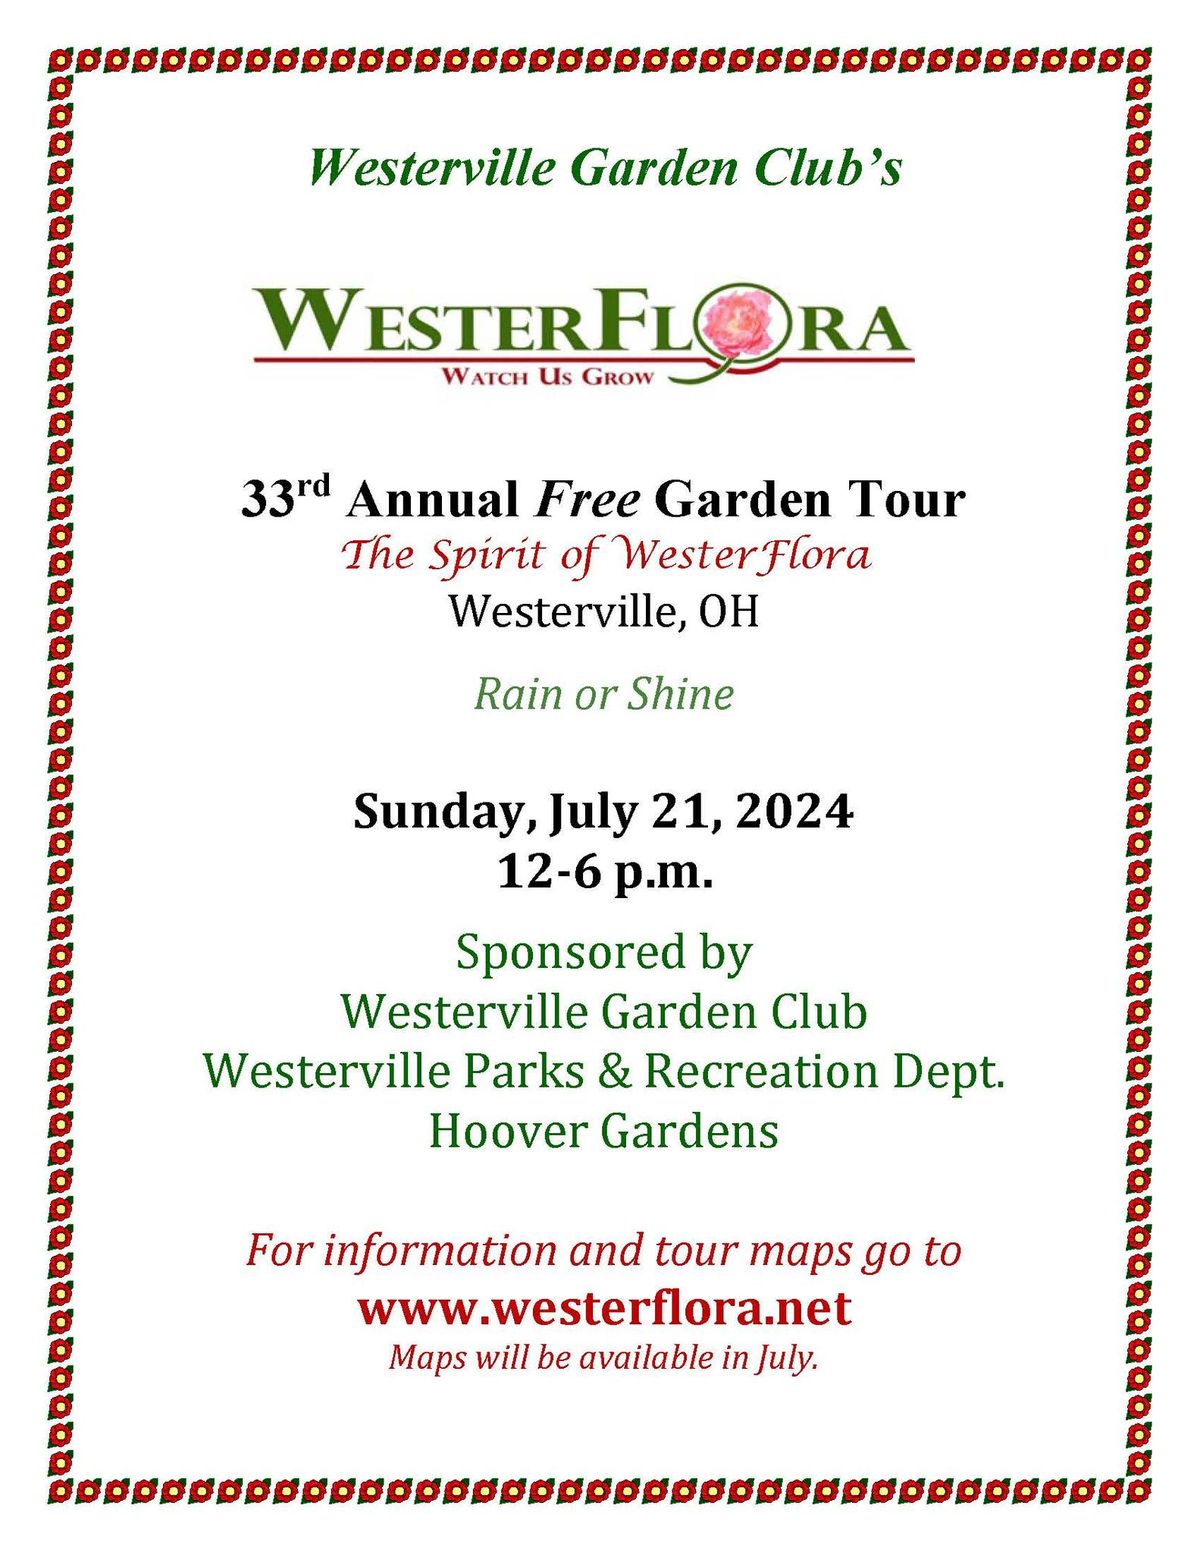 WesterFlora Landscape Garden tour